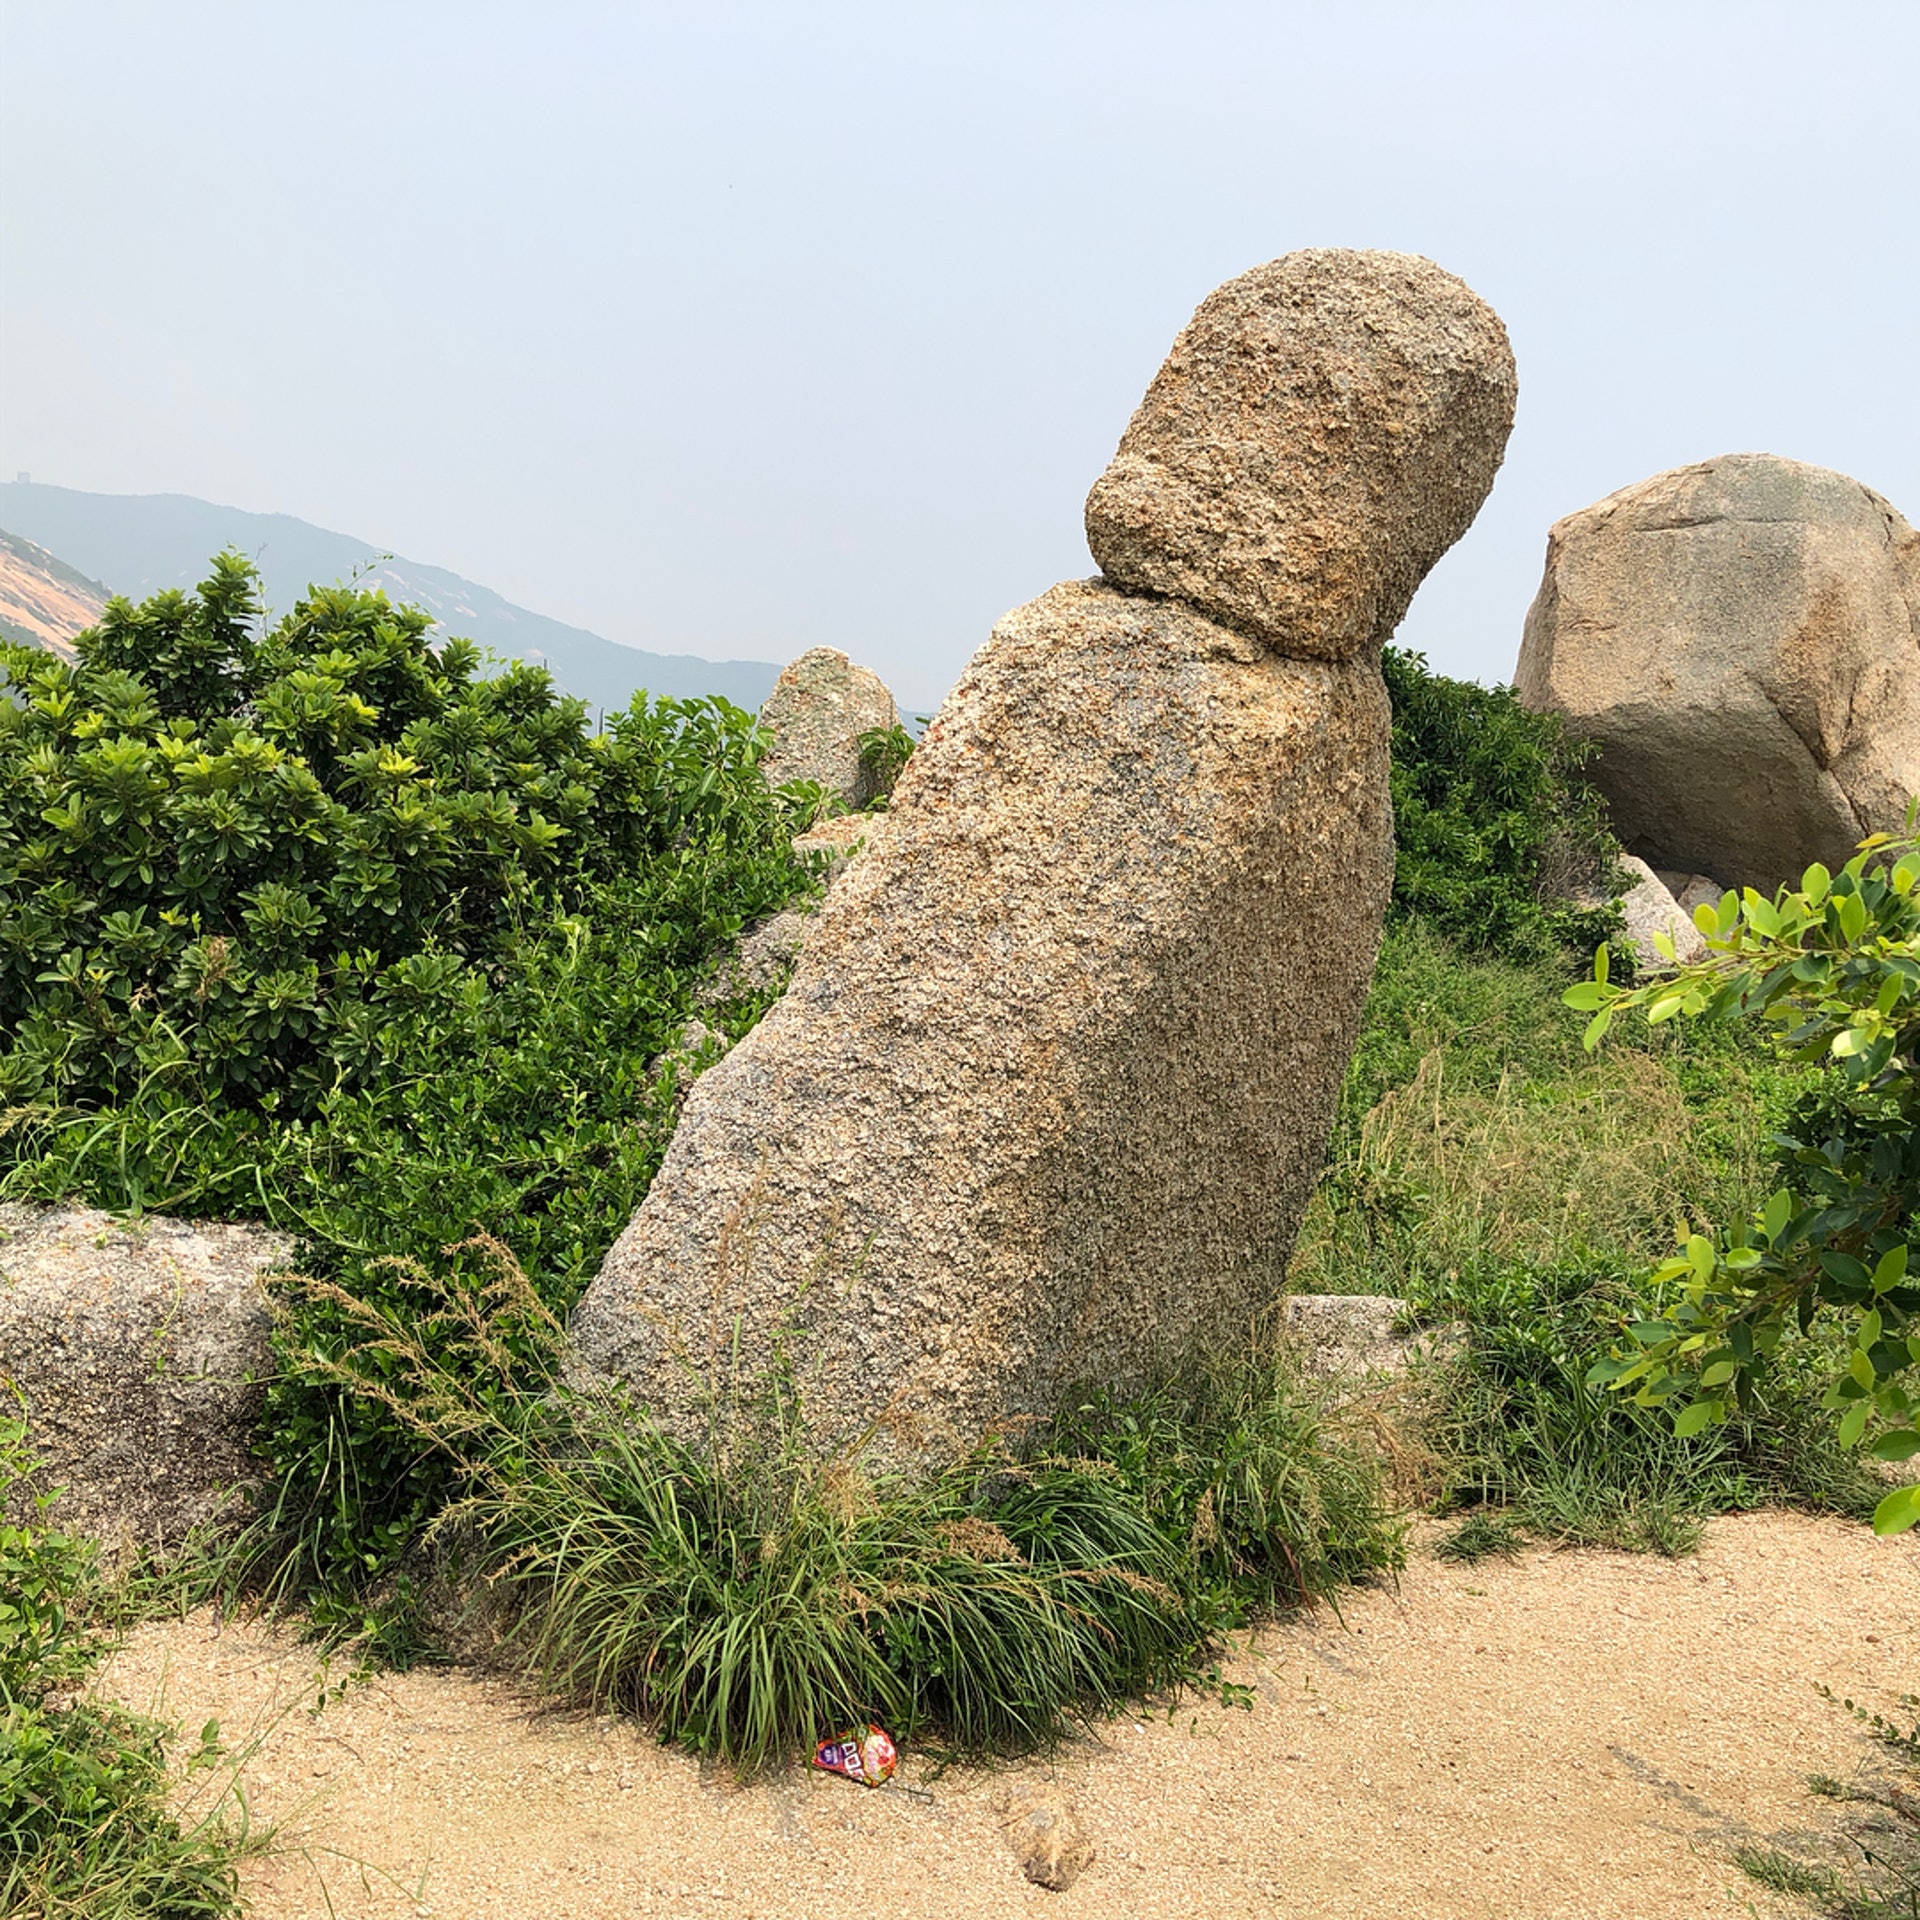 【打卡點5：僧人石】有點迷你的僧人石位處巨大的靈龜石前方，看上去「僧人」好像正向靈龜微微欠身。（Instagram @leolafood）